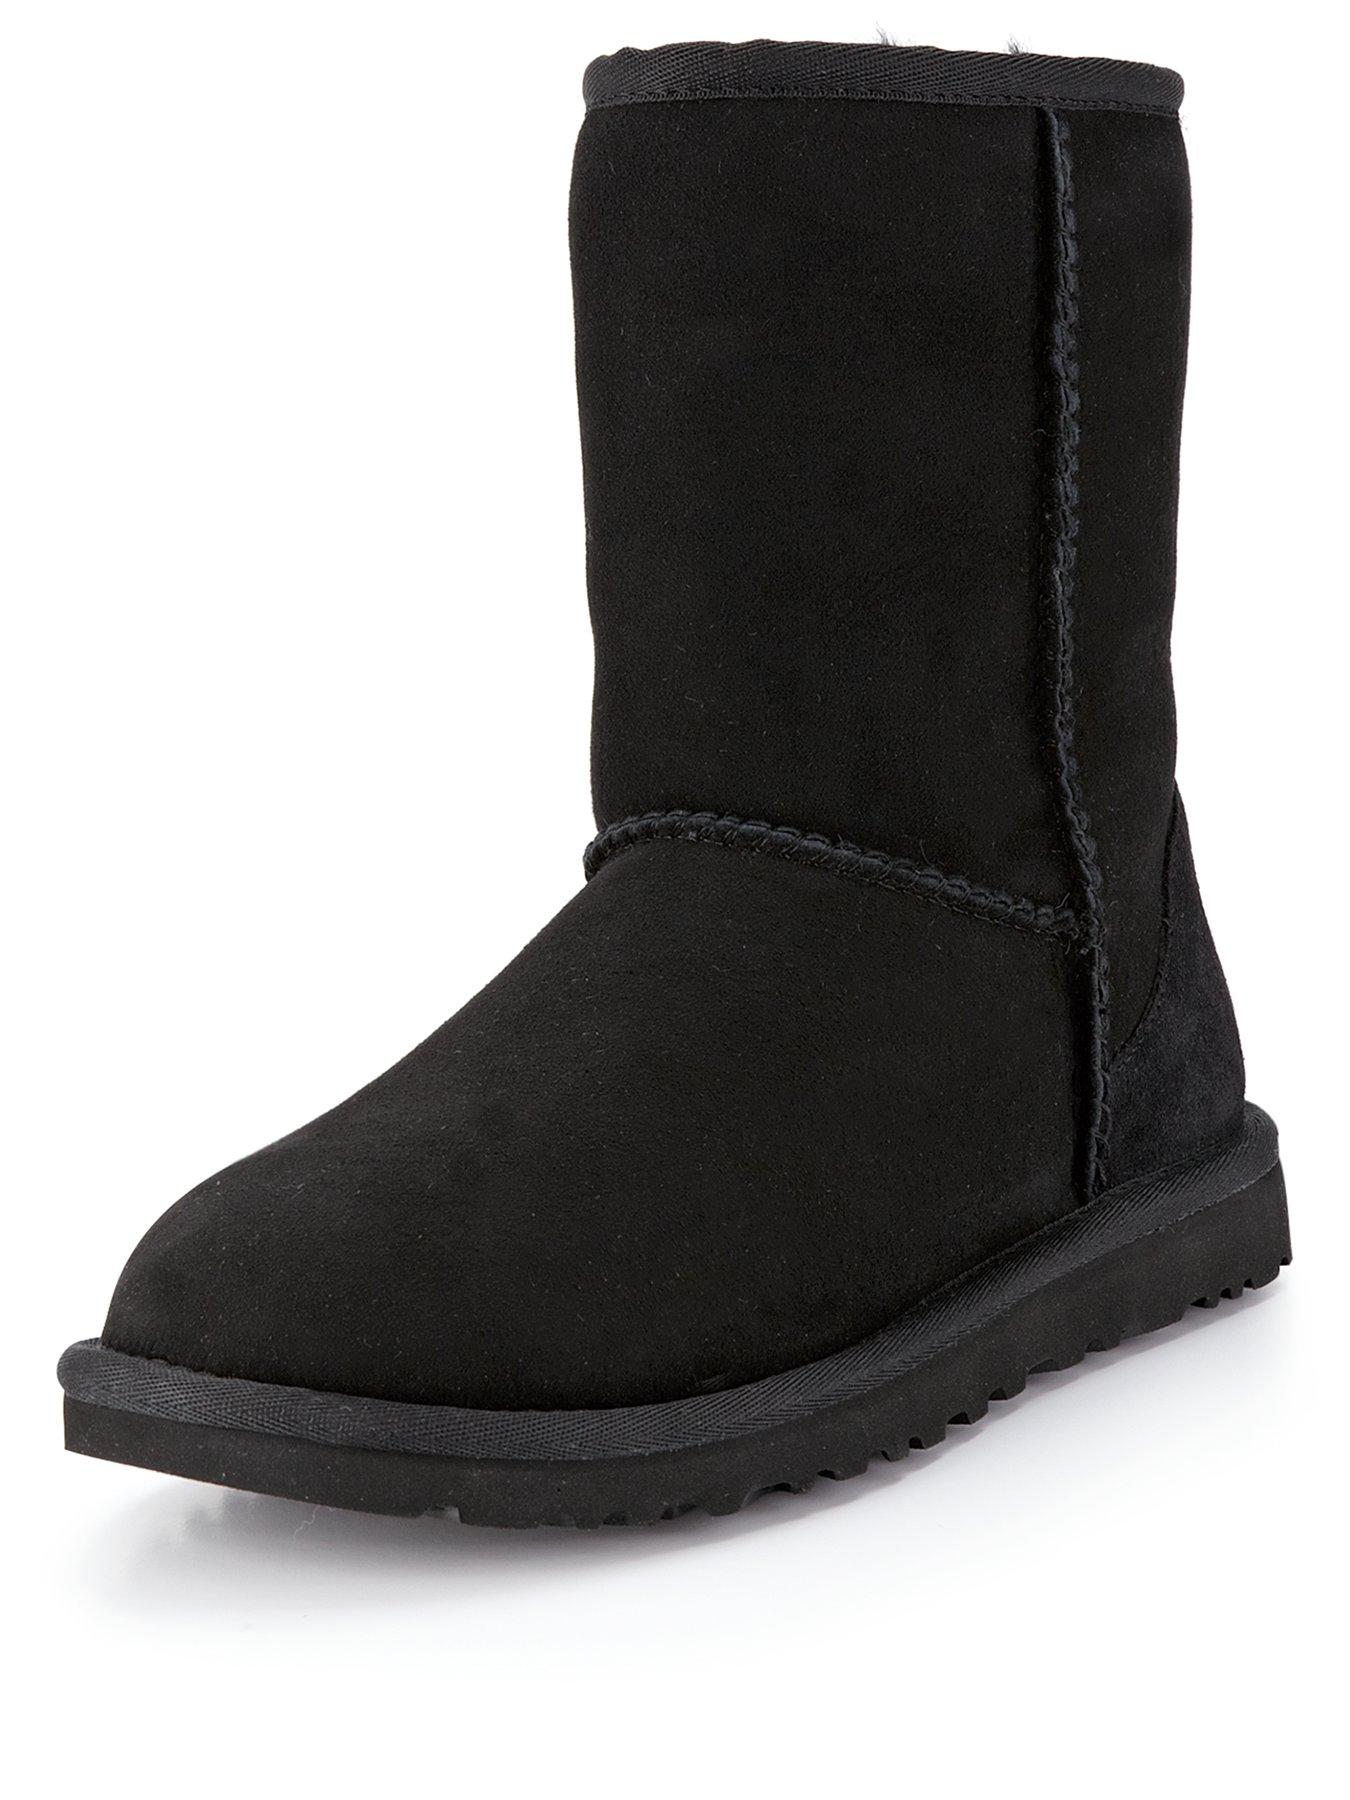 short black ugg boots